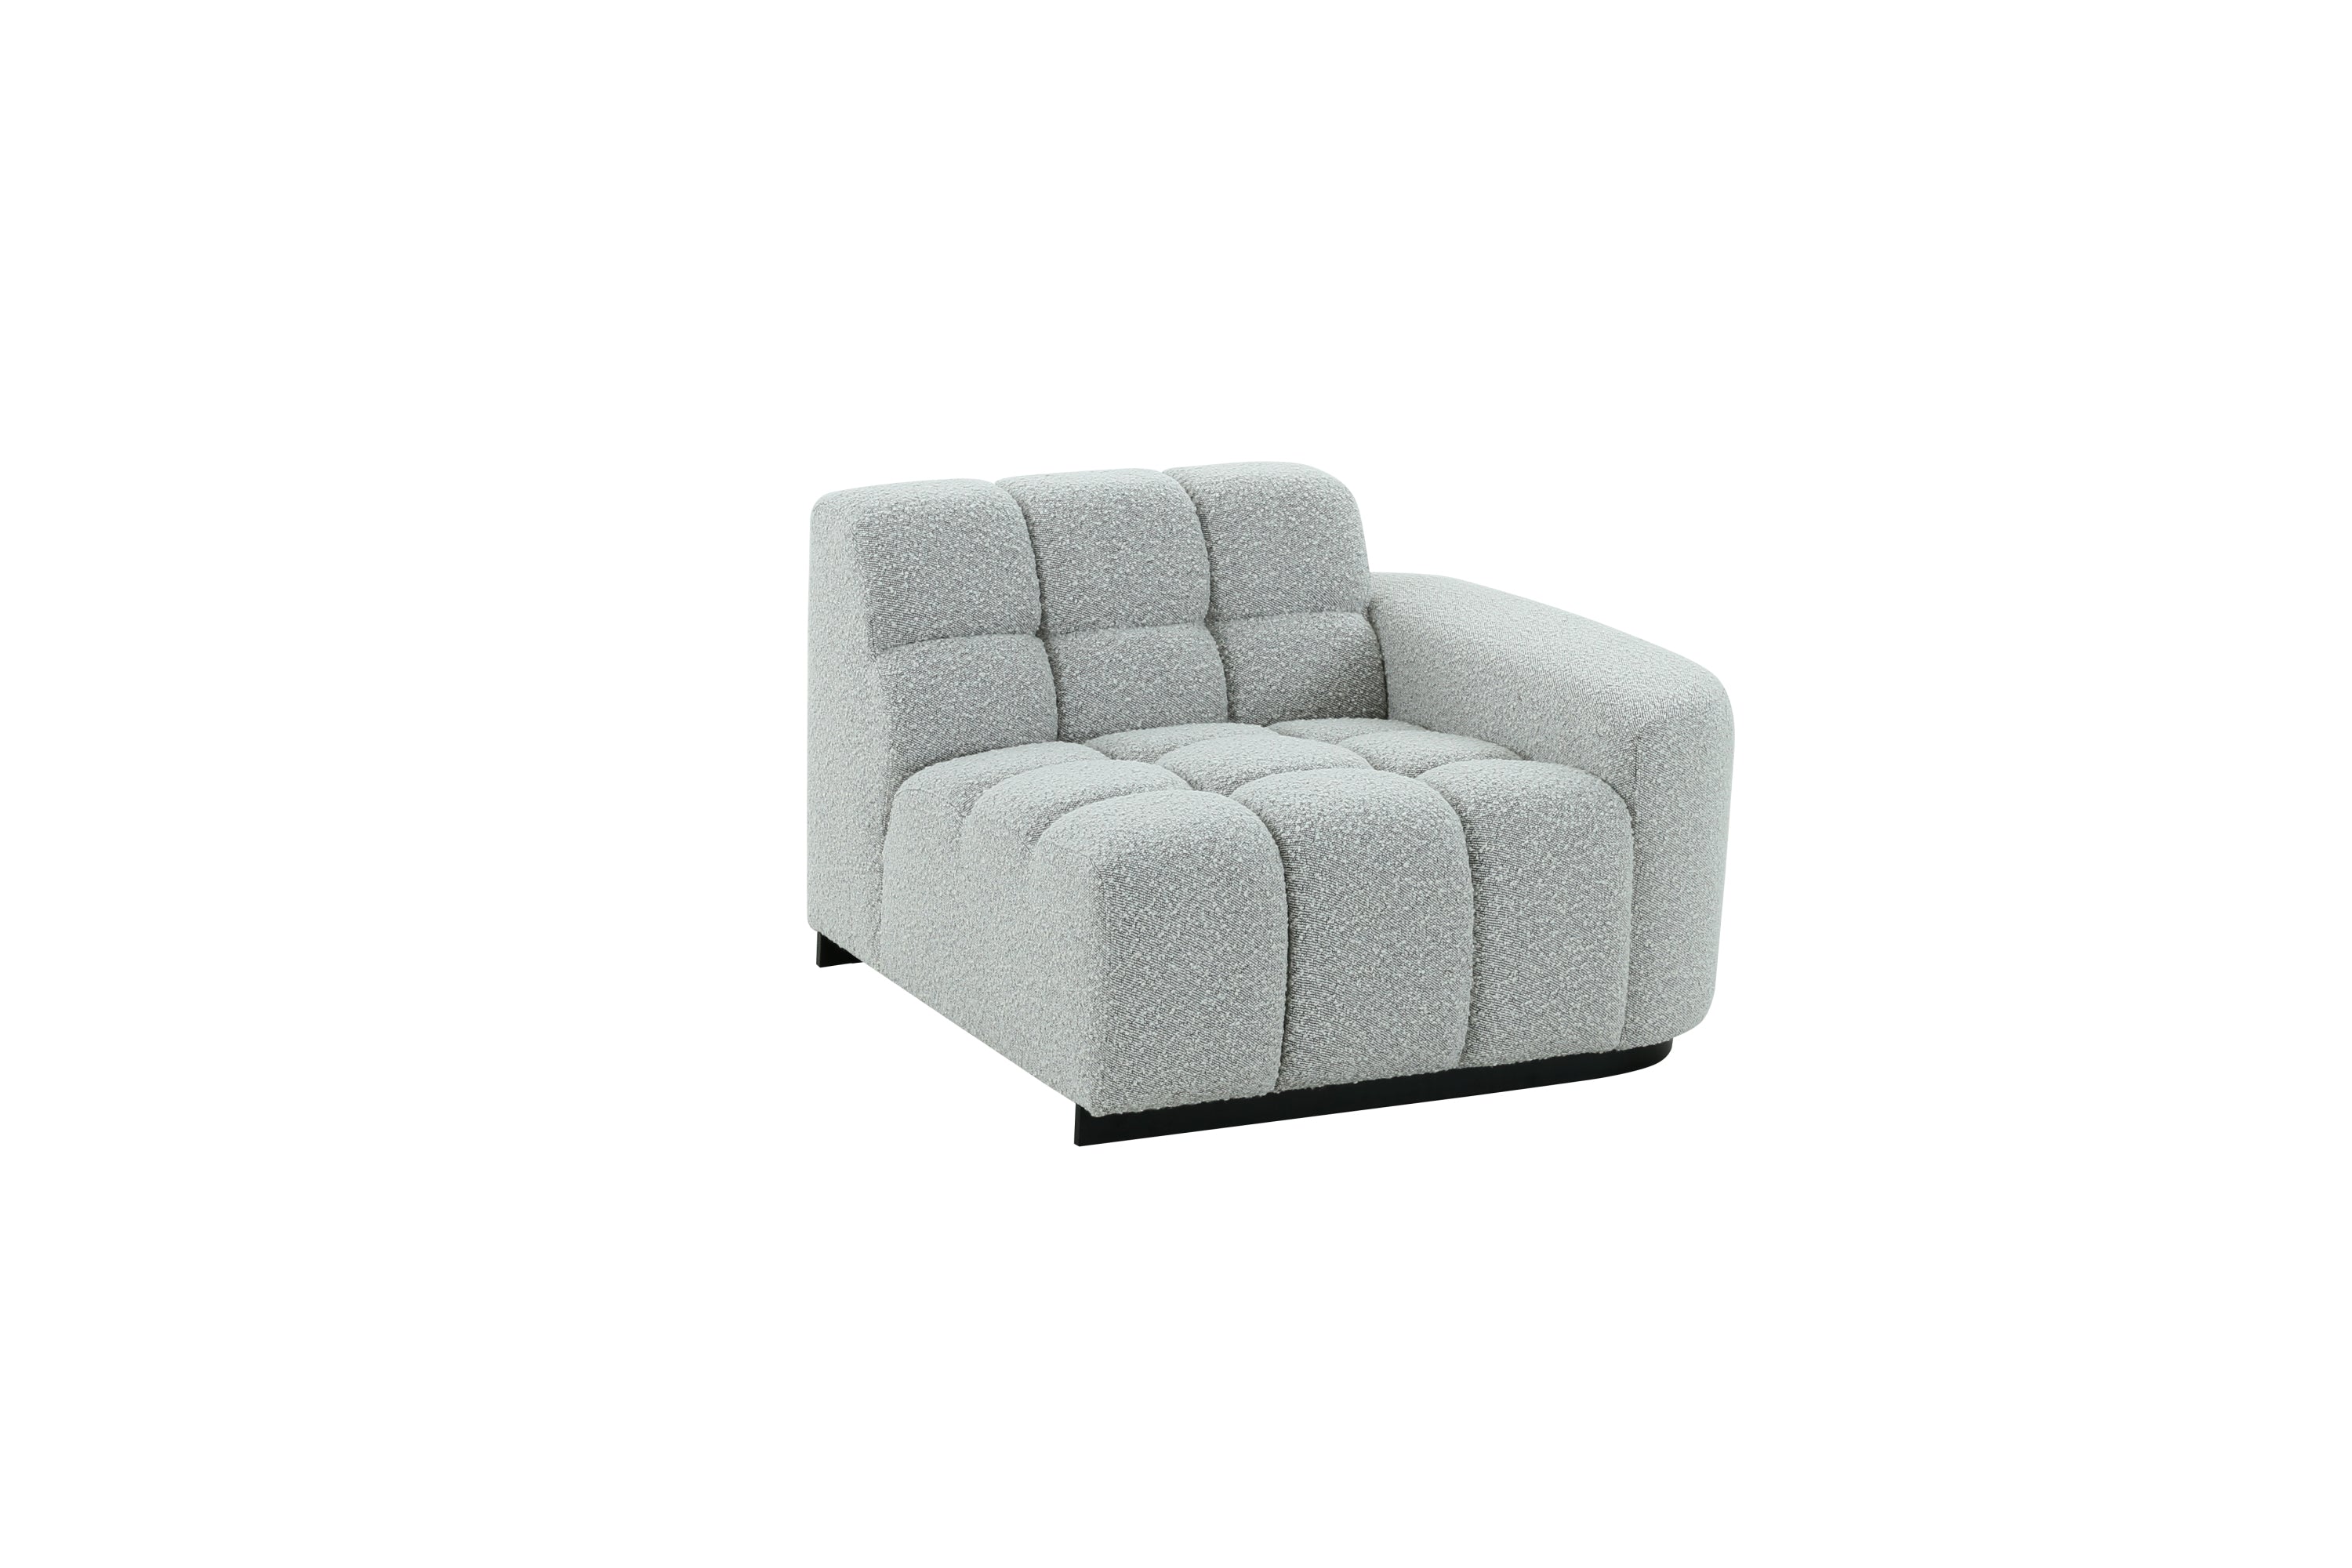 Modern Modular Sofa Set